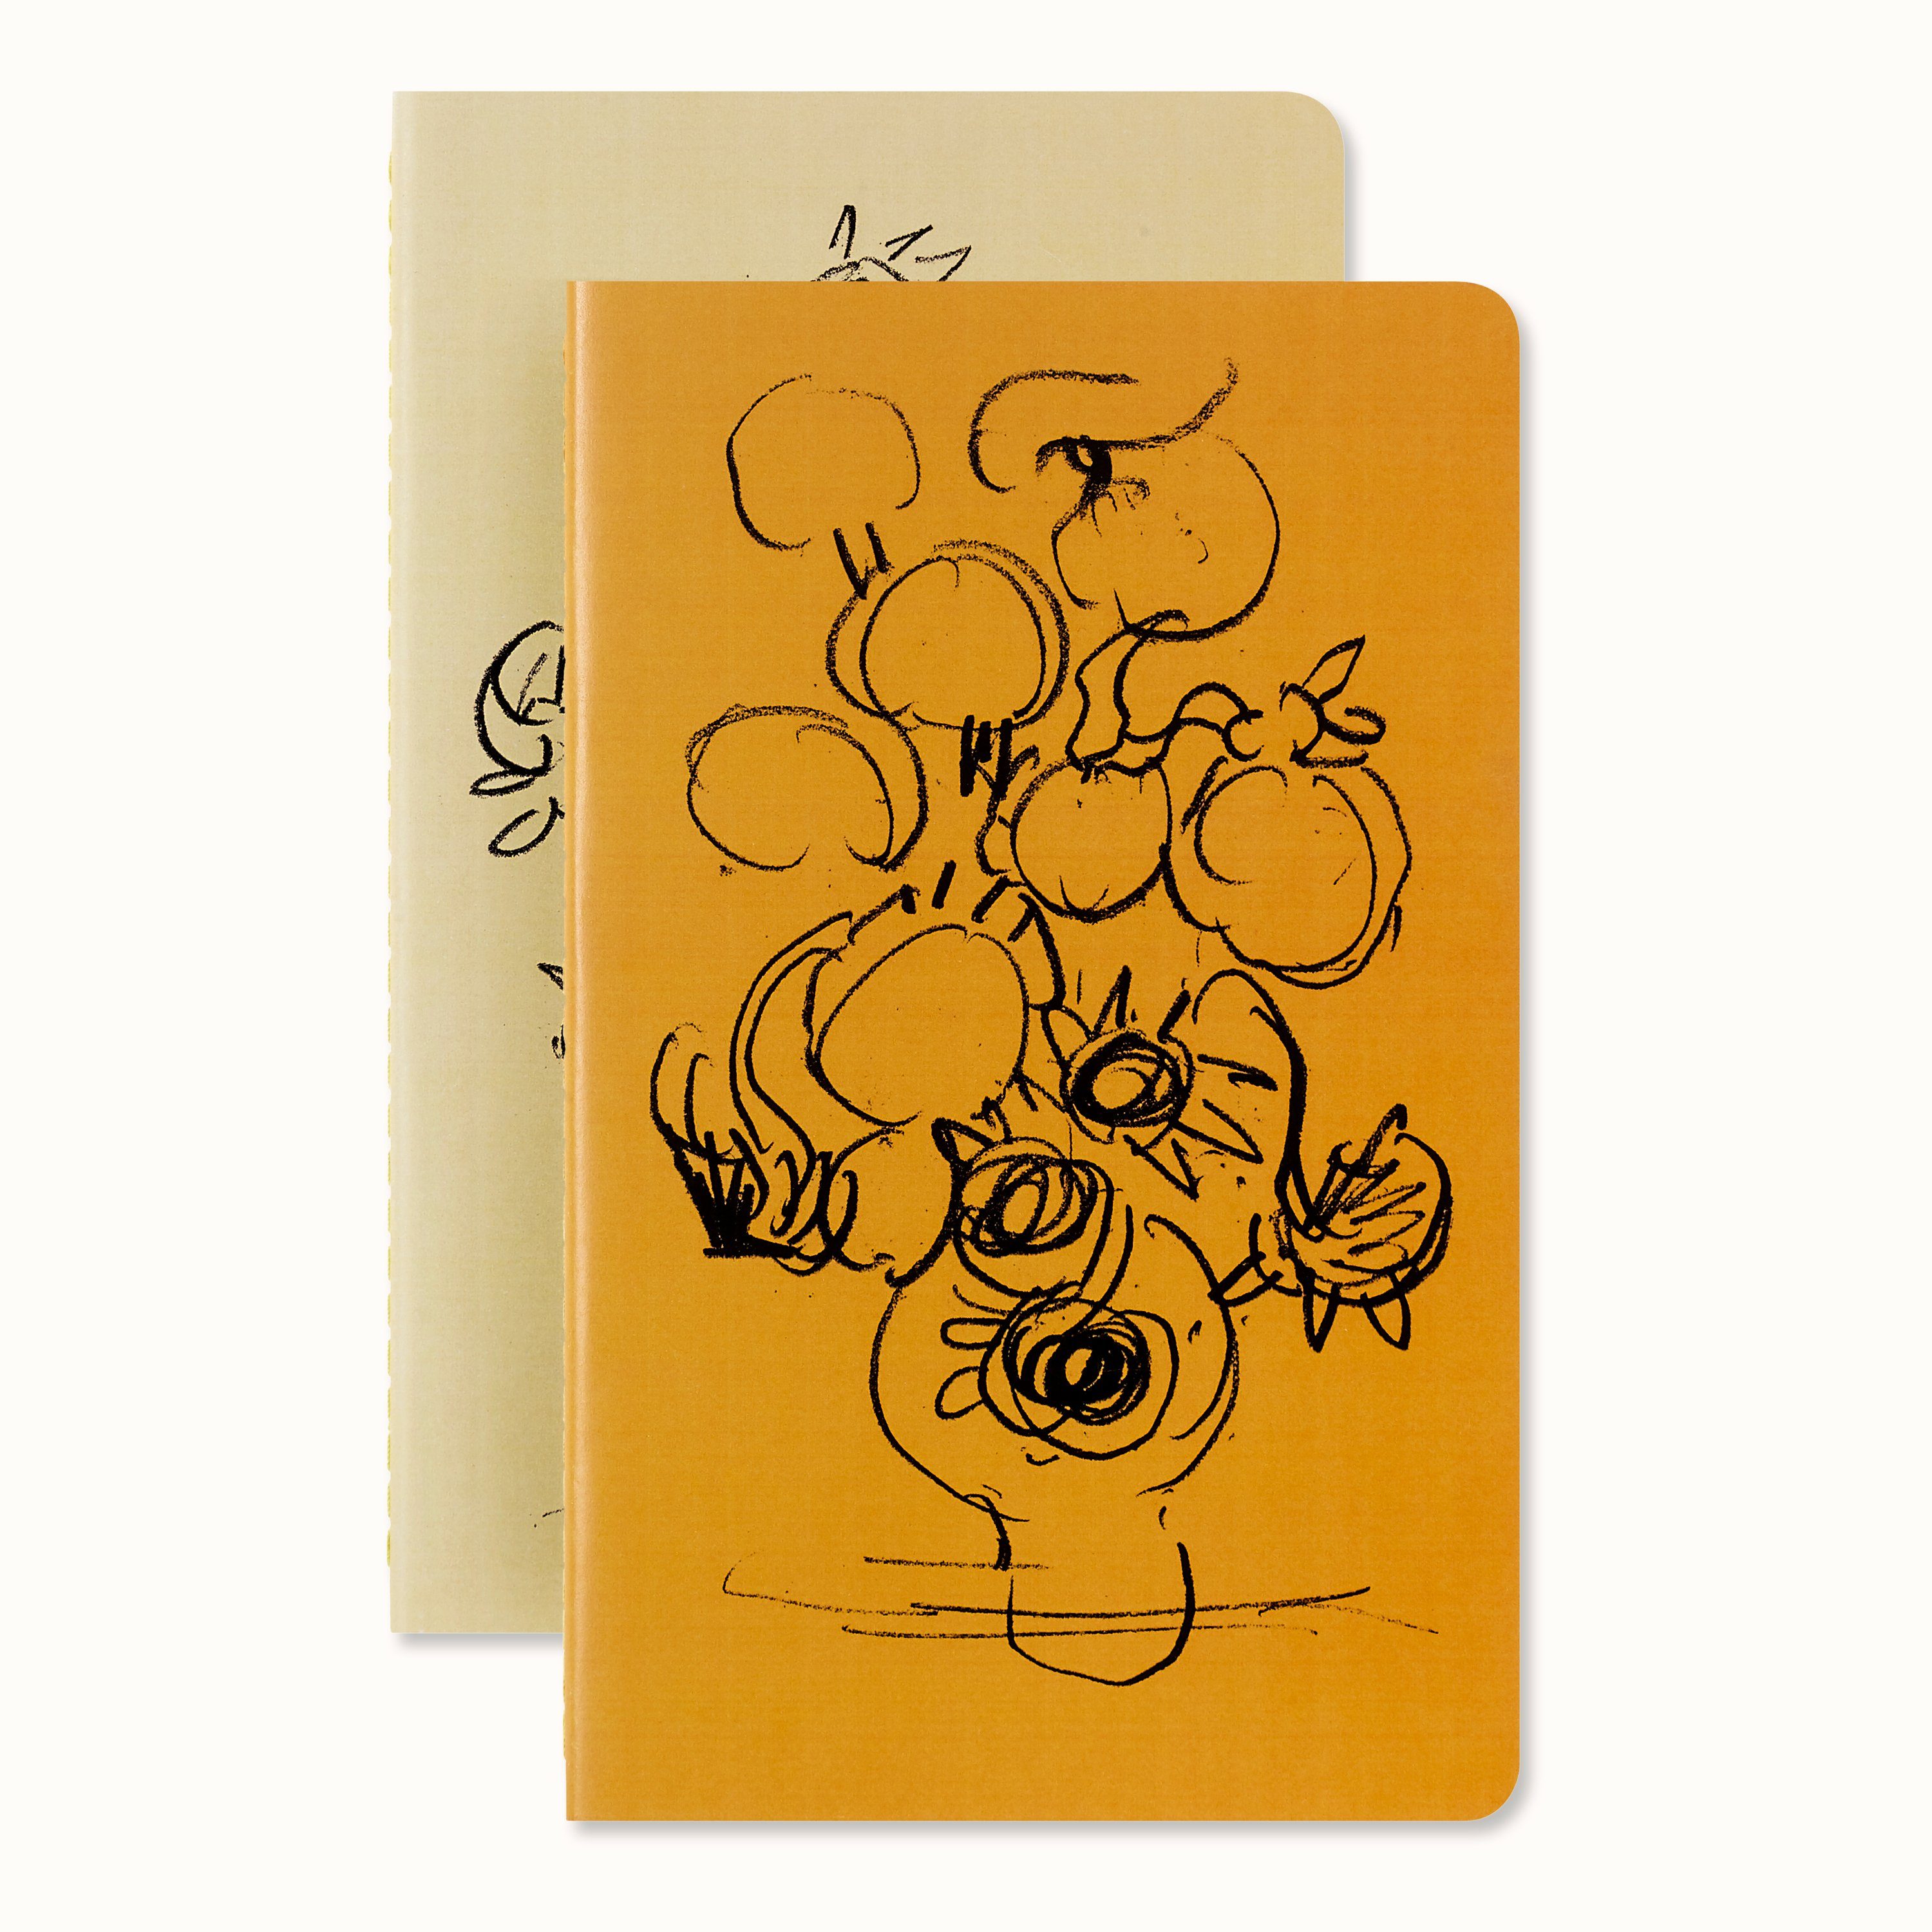 MOLESKINE Notizbuch, Cahier - Van Gogh, A5, 2er Set, liniert, Kartoneinband